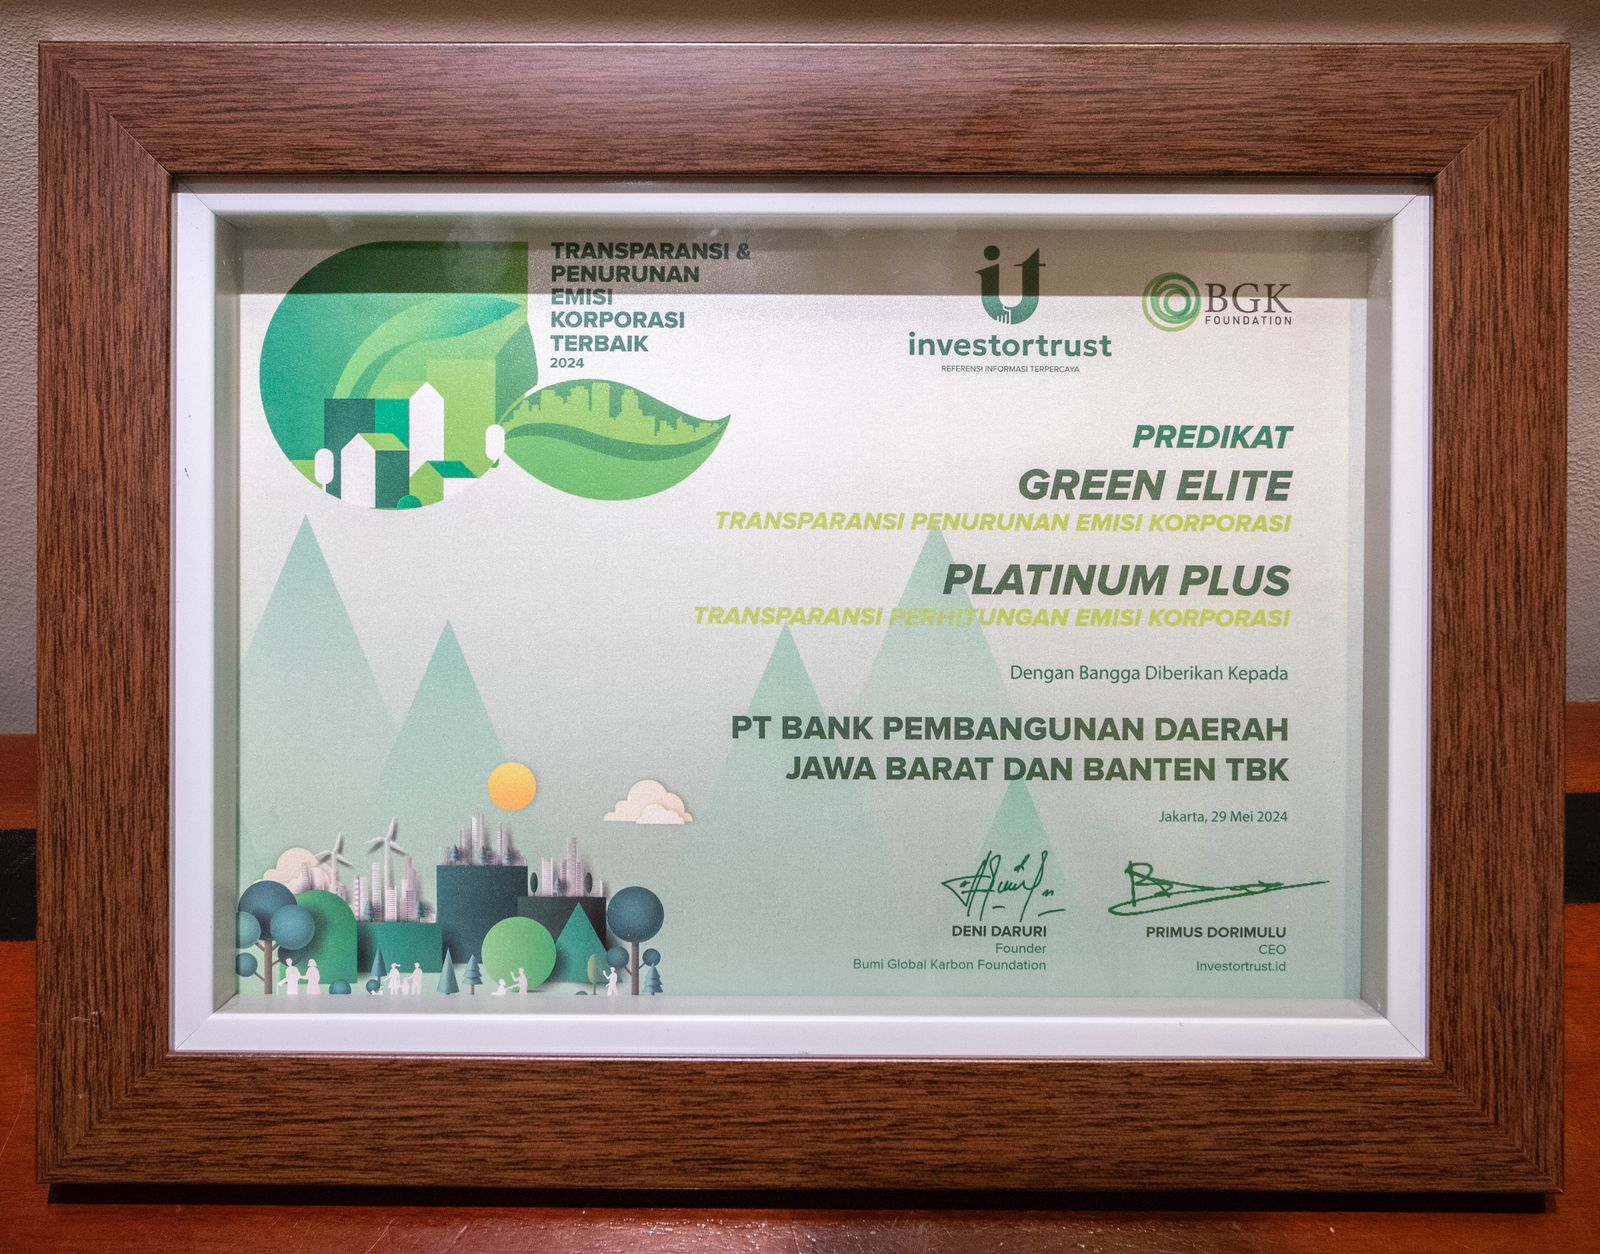 bank bjb meraih penghargaan Transparansi Penurunan Emisi Korporasi Terbaik 2024 dari Bumi Global Karbon (BGK) Foundation yang bekerjasama dengan Investortrust, pada Rabu (29/5/2024) di Hotel Aryaduta, Jakarta.  